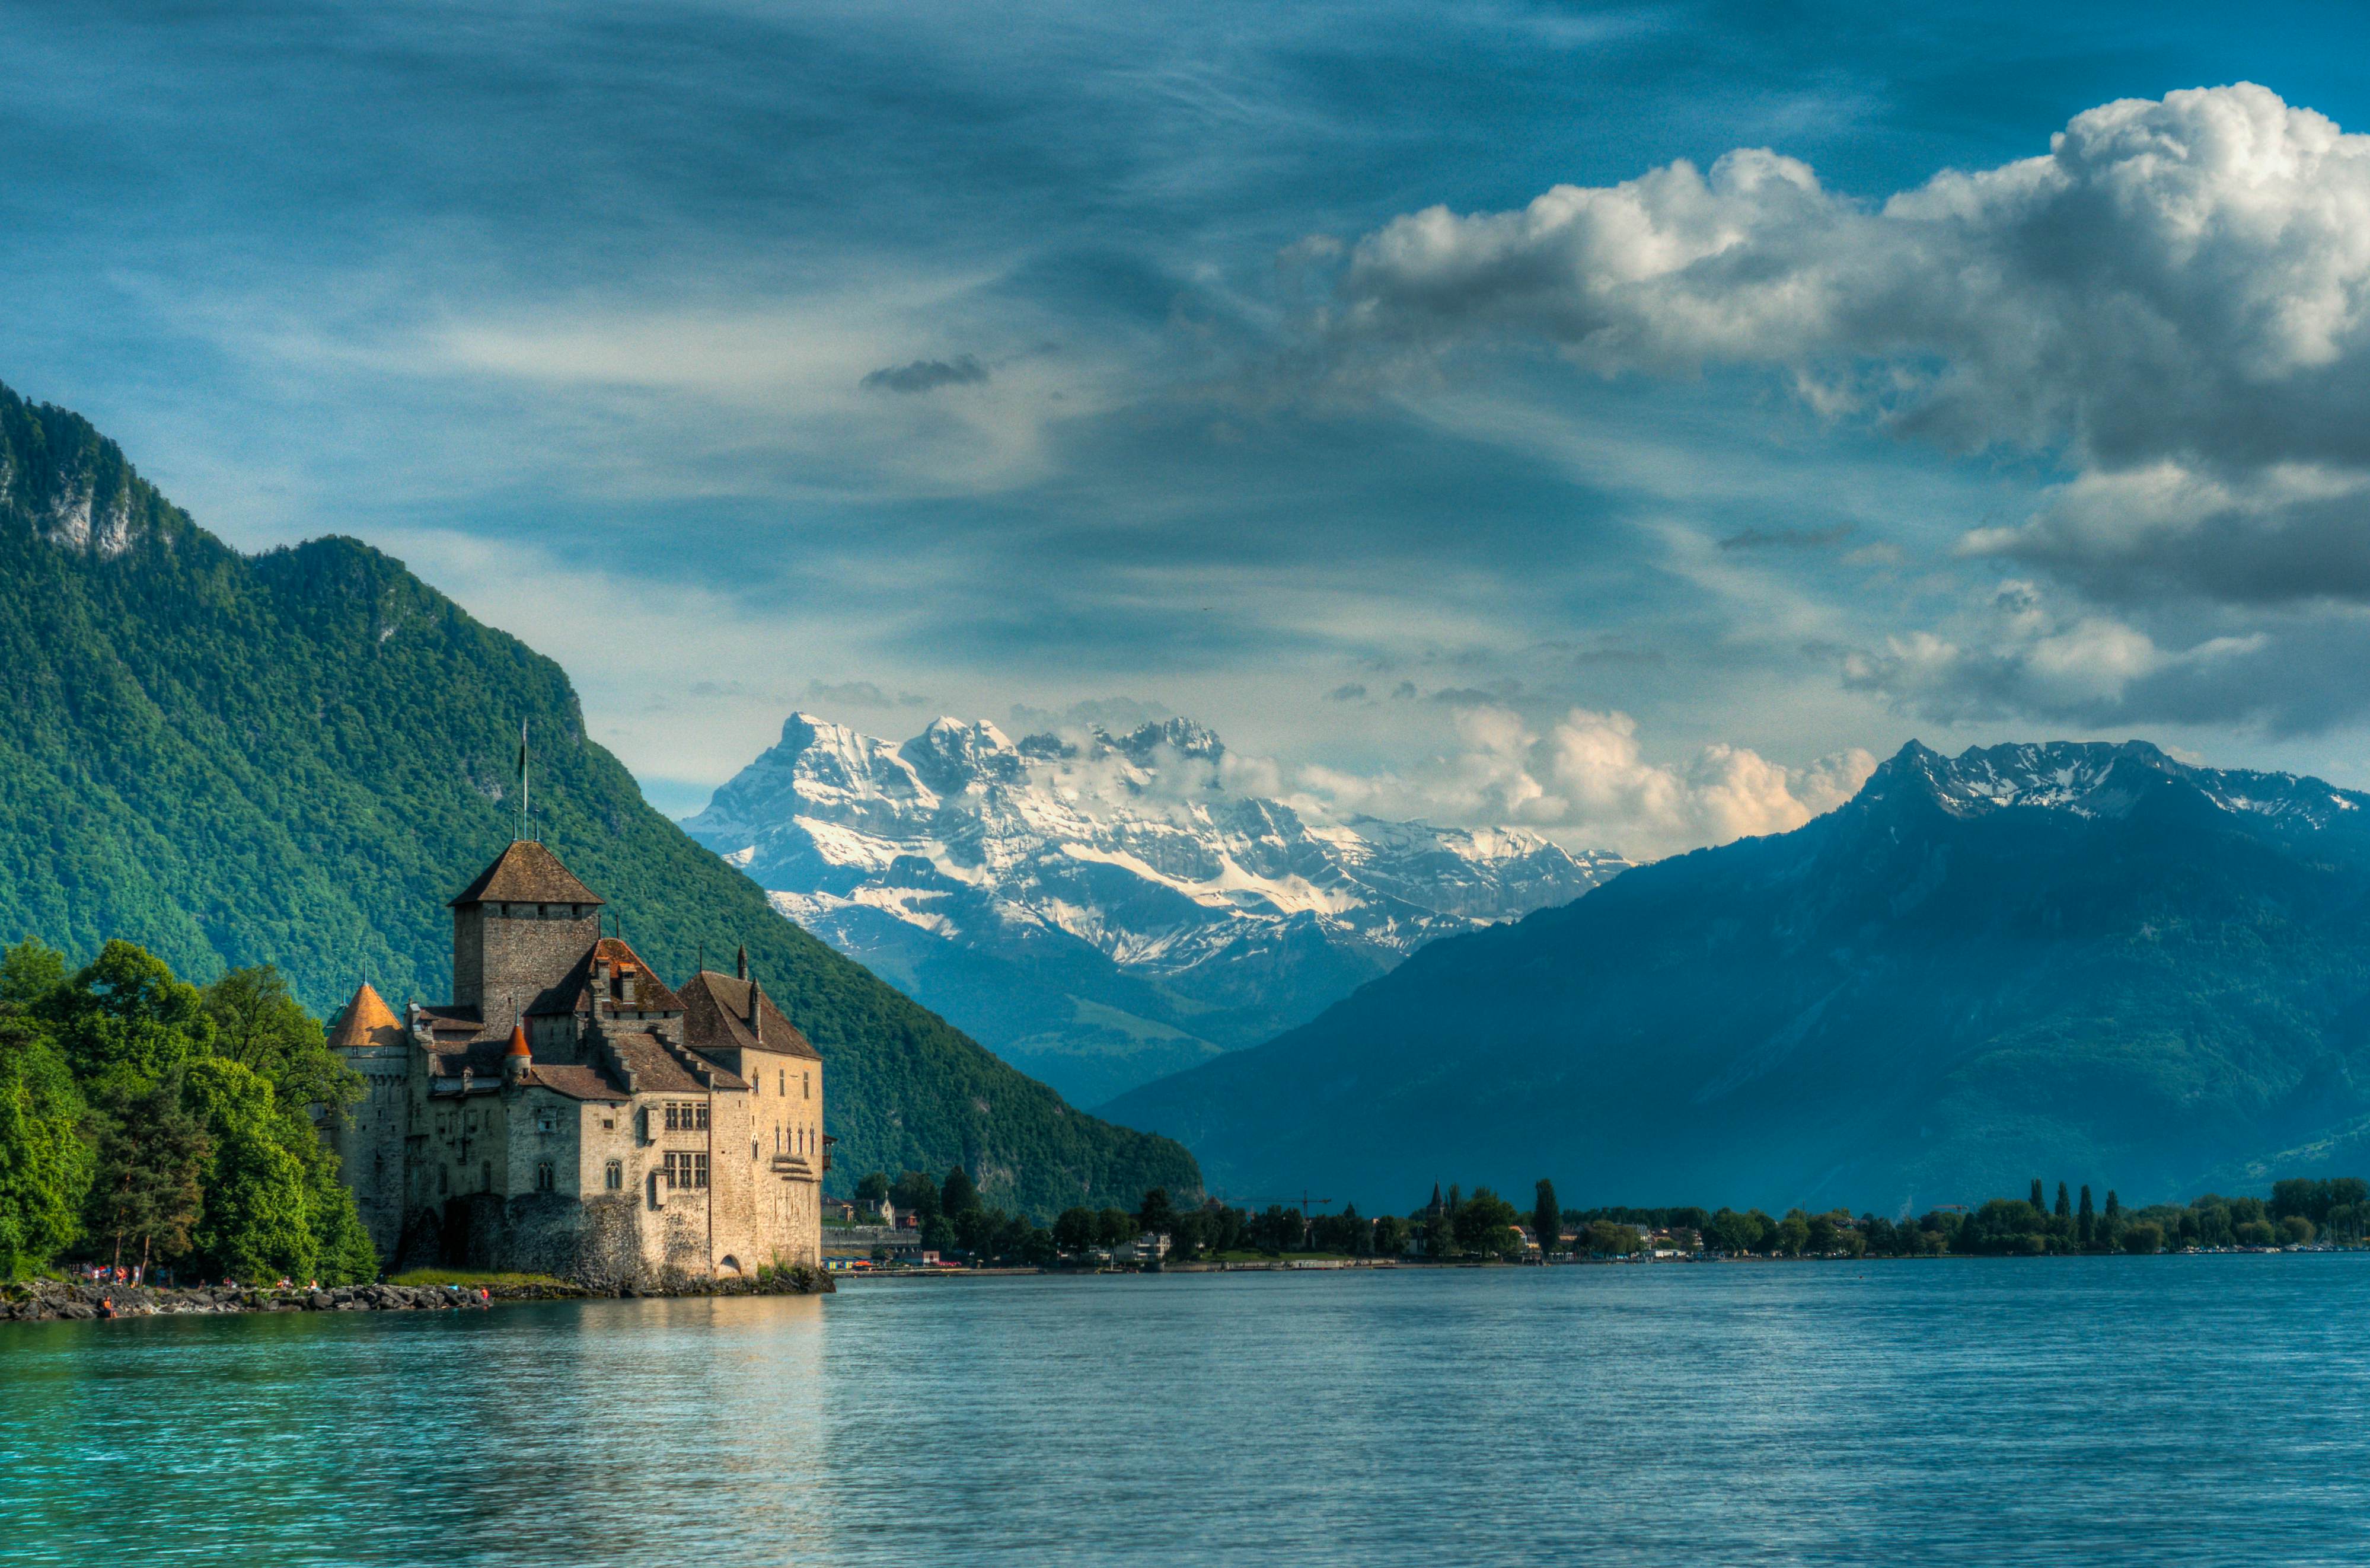 Château de Chillon | Montreux, Switzerland Attractions - Lonely Planet